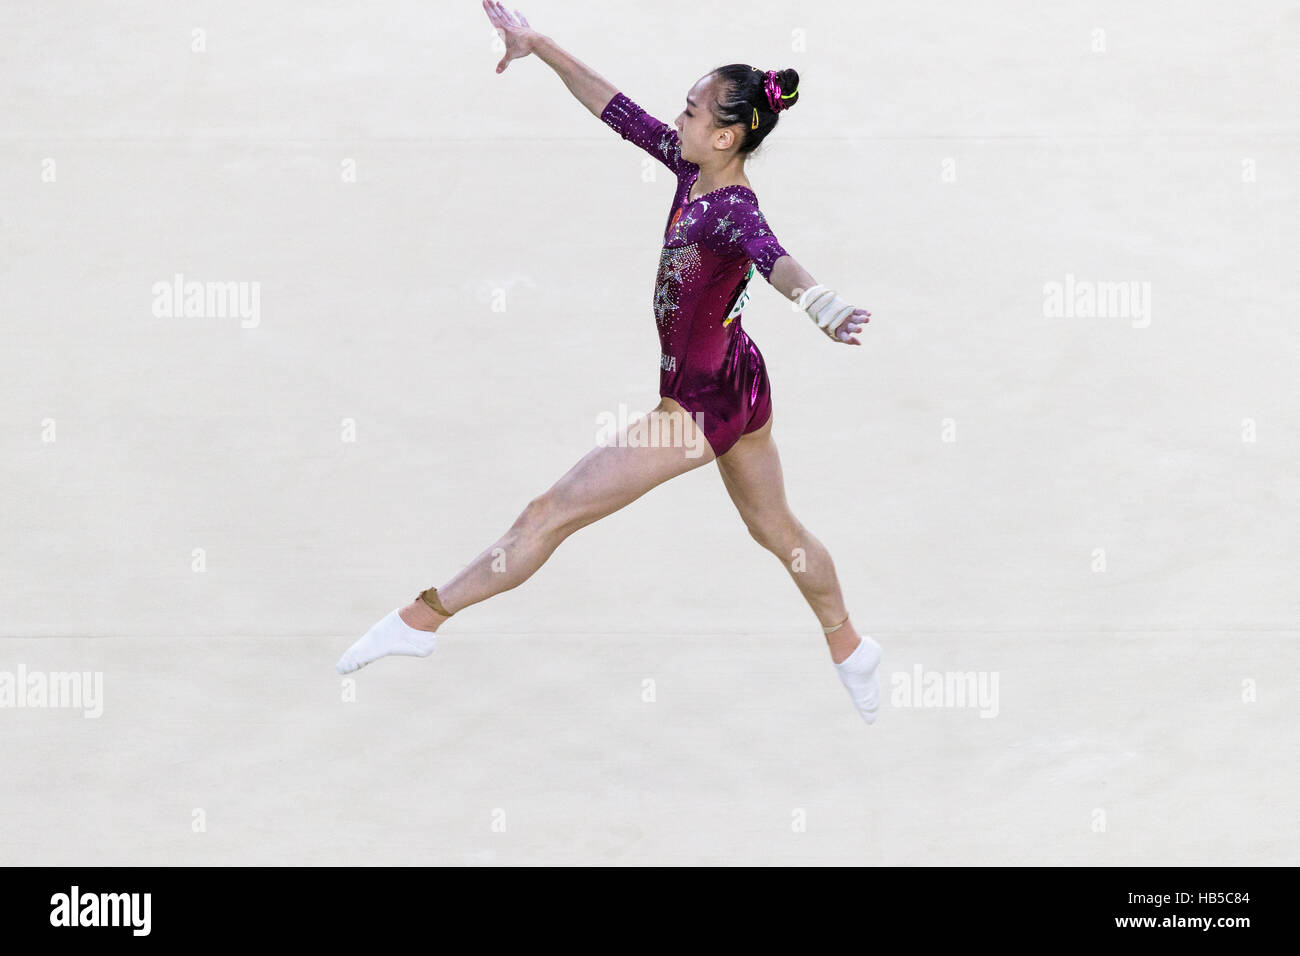 Rio De Janeiro, Brasilien. 9. August 2016.  Chunsong Shang (CHN) durchführt Fußbodenübung Dring Team-Wettbewerb bei den Olympischen Sommerspielen 2016. © Pau Stockfoto